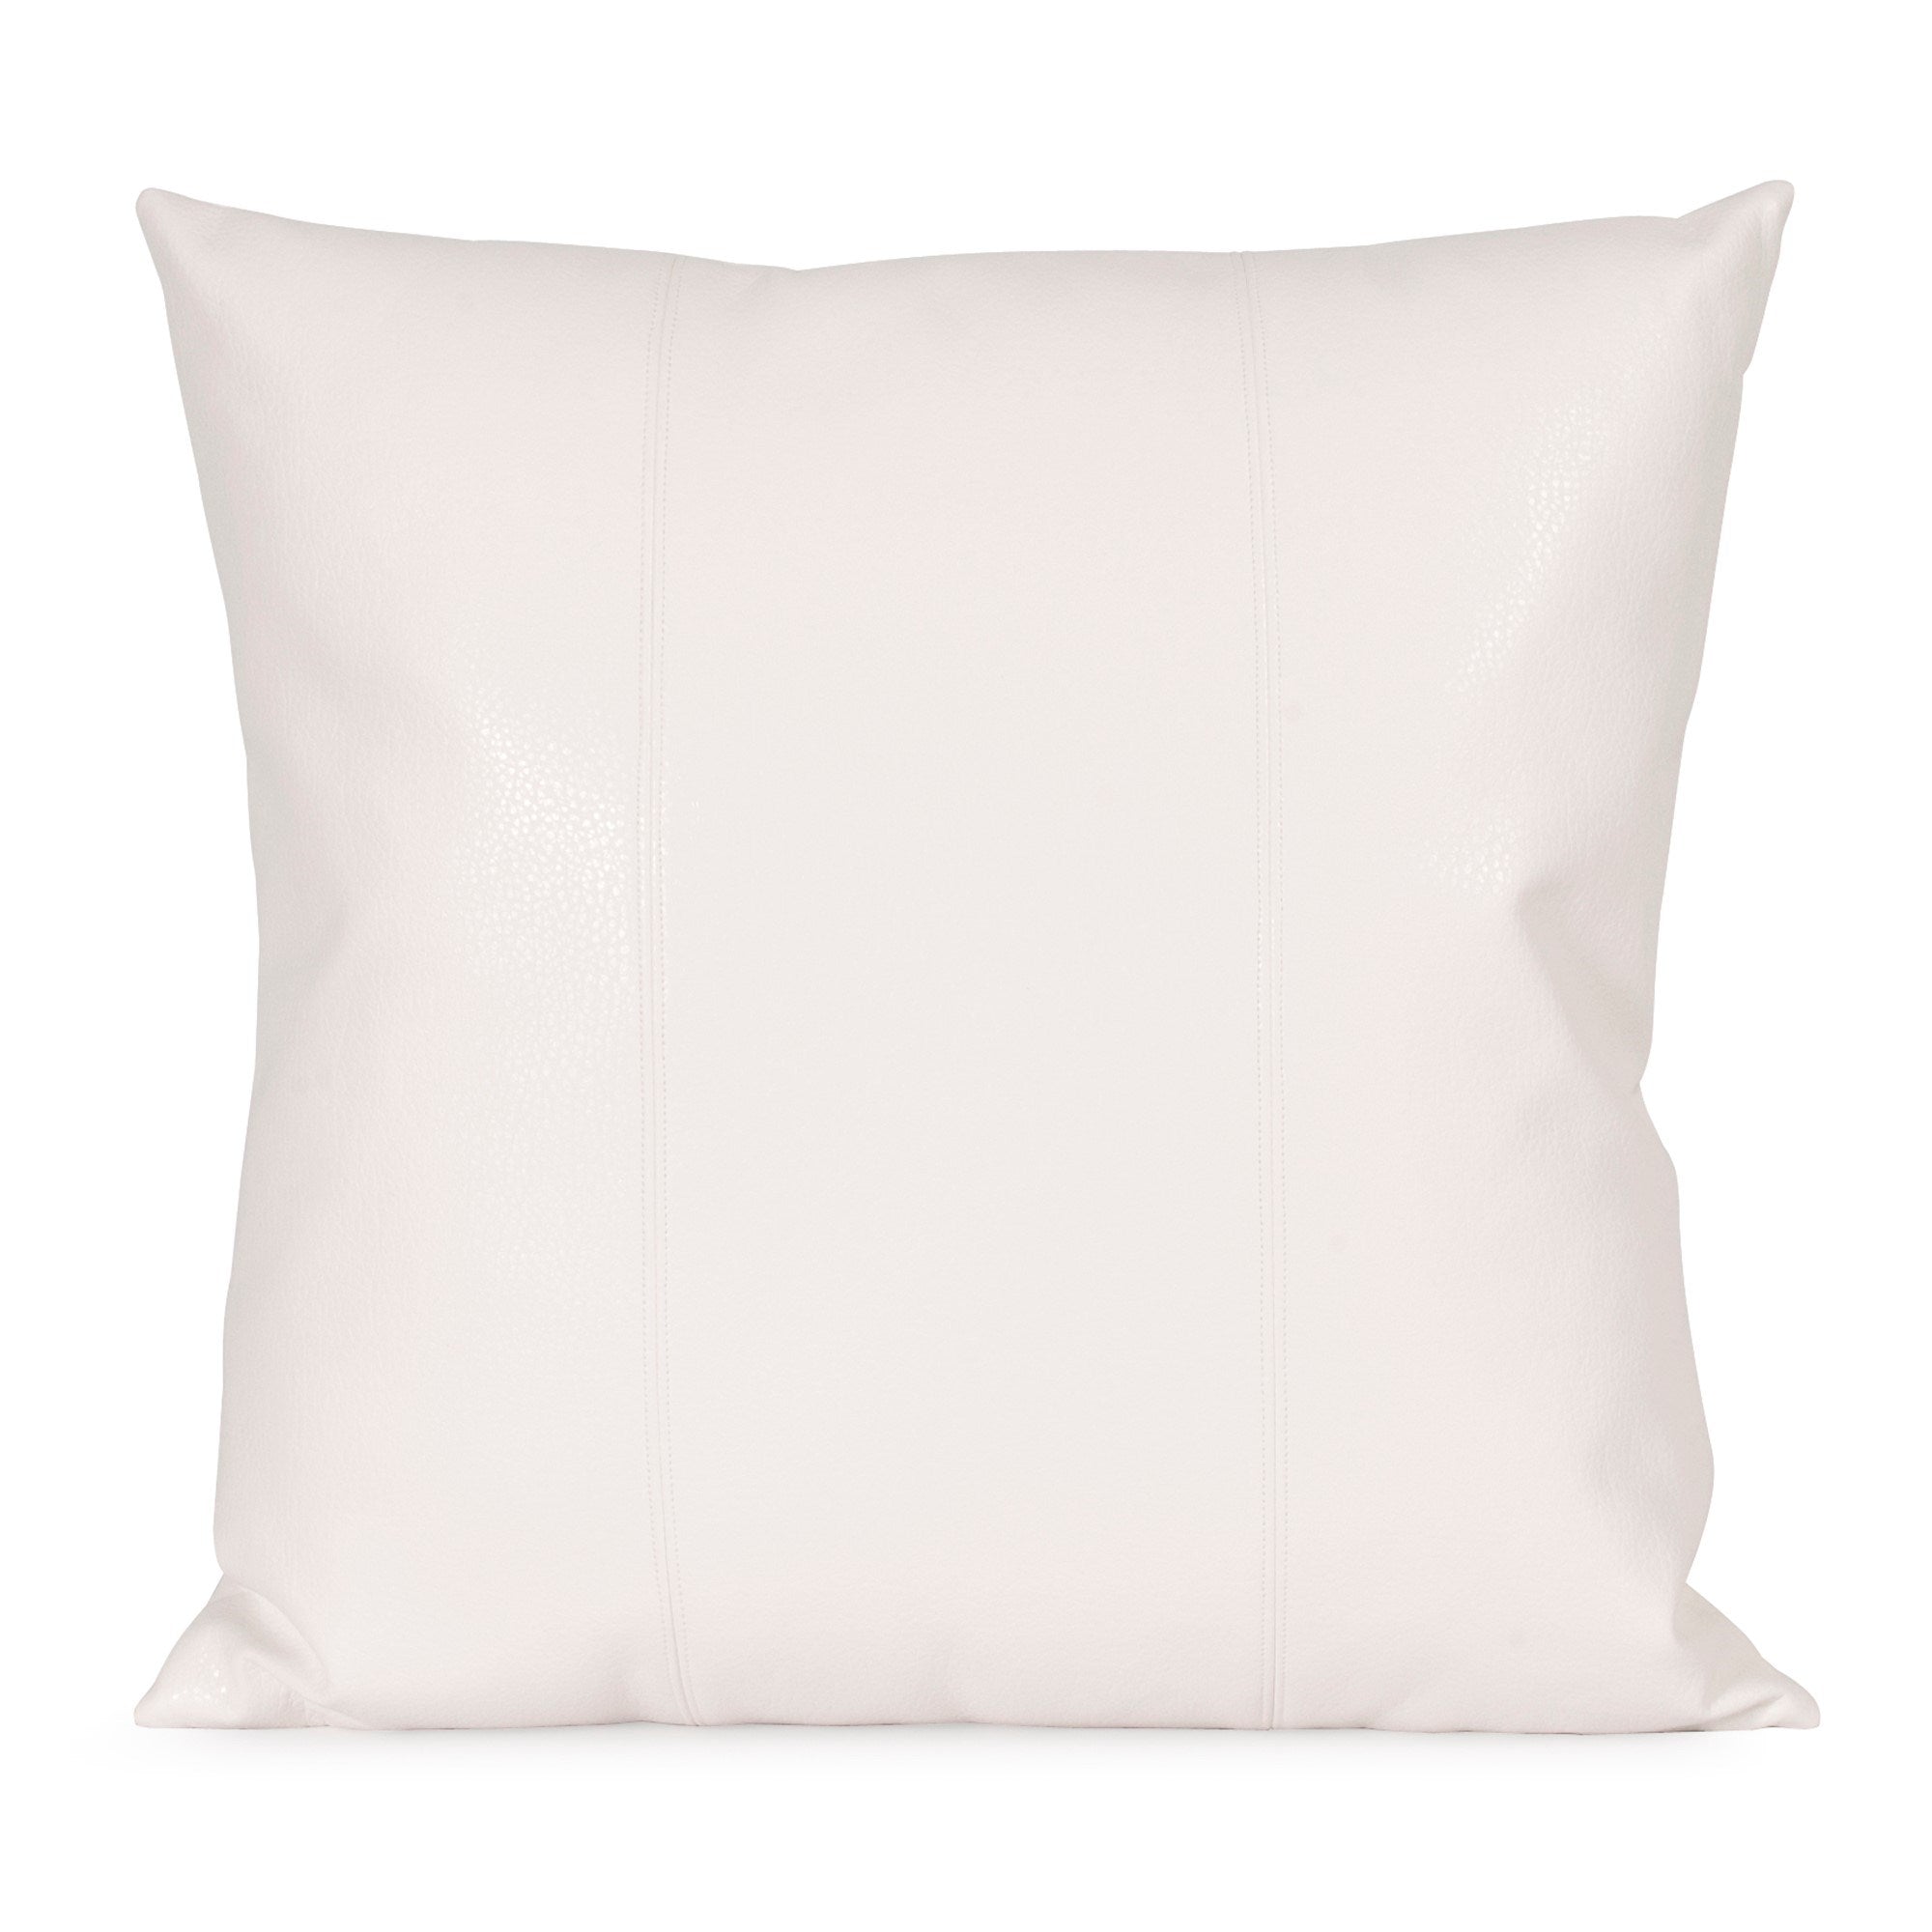 Avanti White Poly Pillow- 24" x 24"